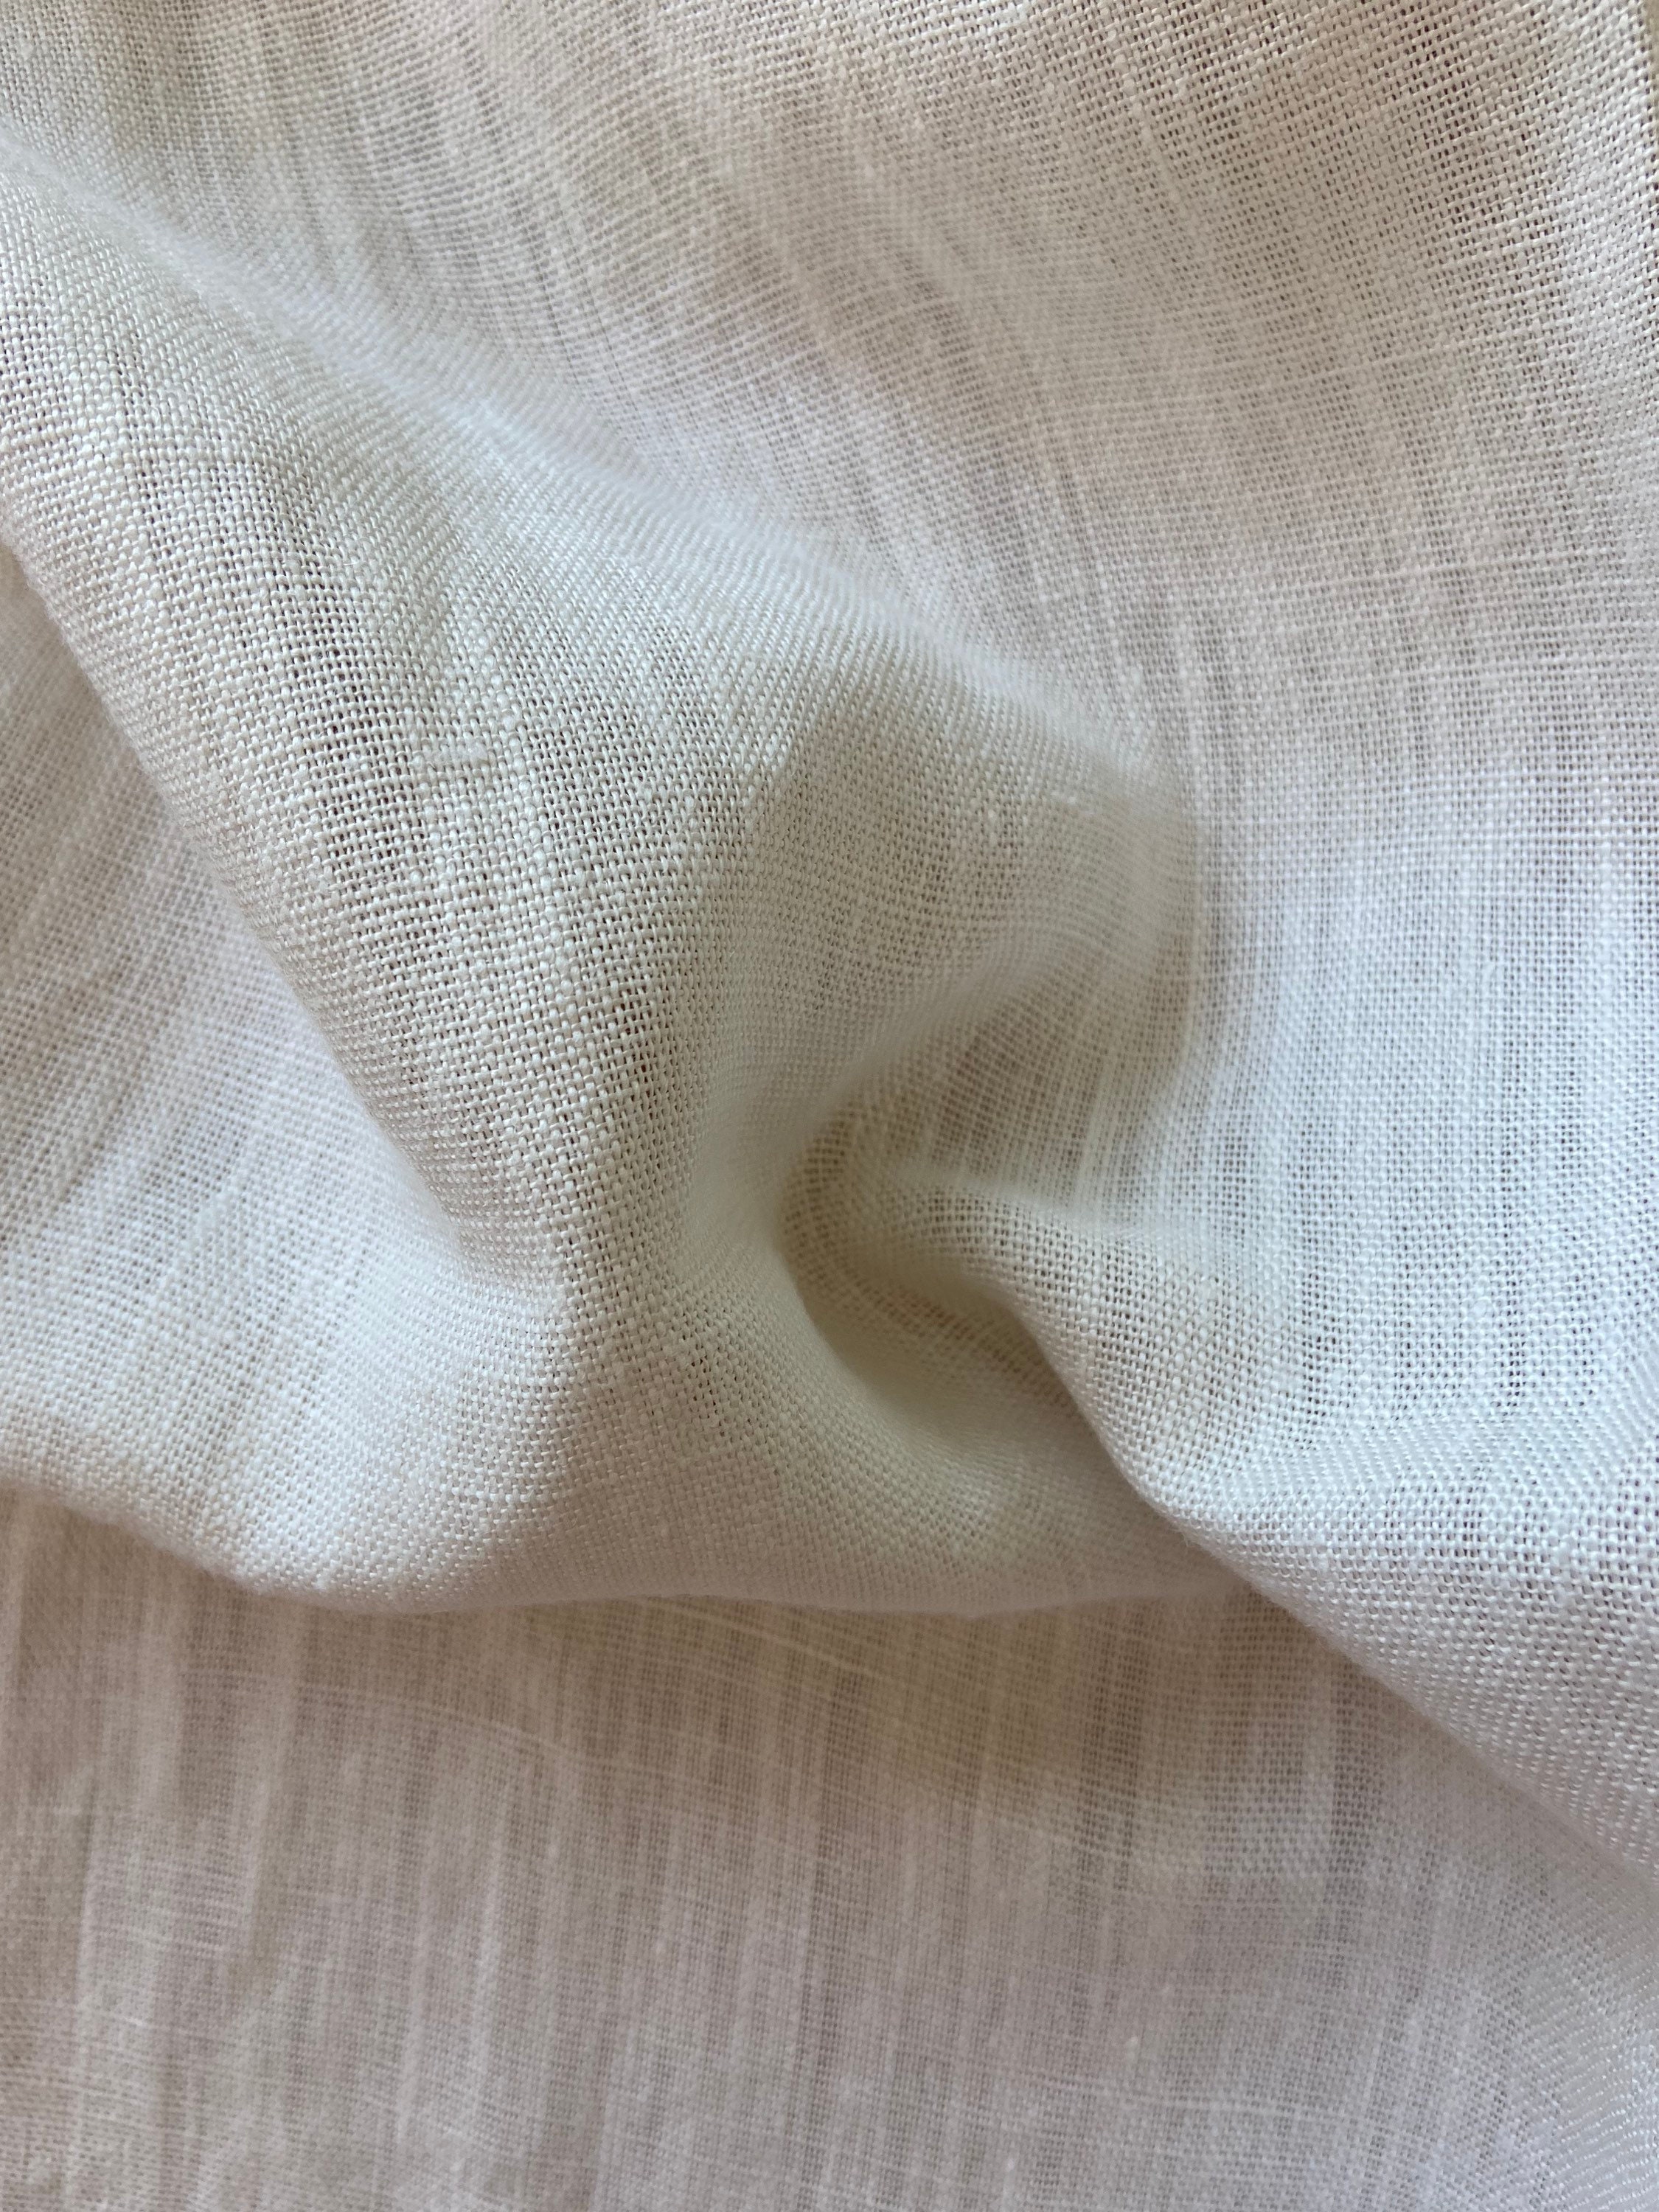  Malla transparente 100% lino tela 55 pulgadas por yarda/por  metro (gris) : Arte y Manualidades